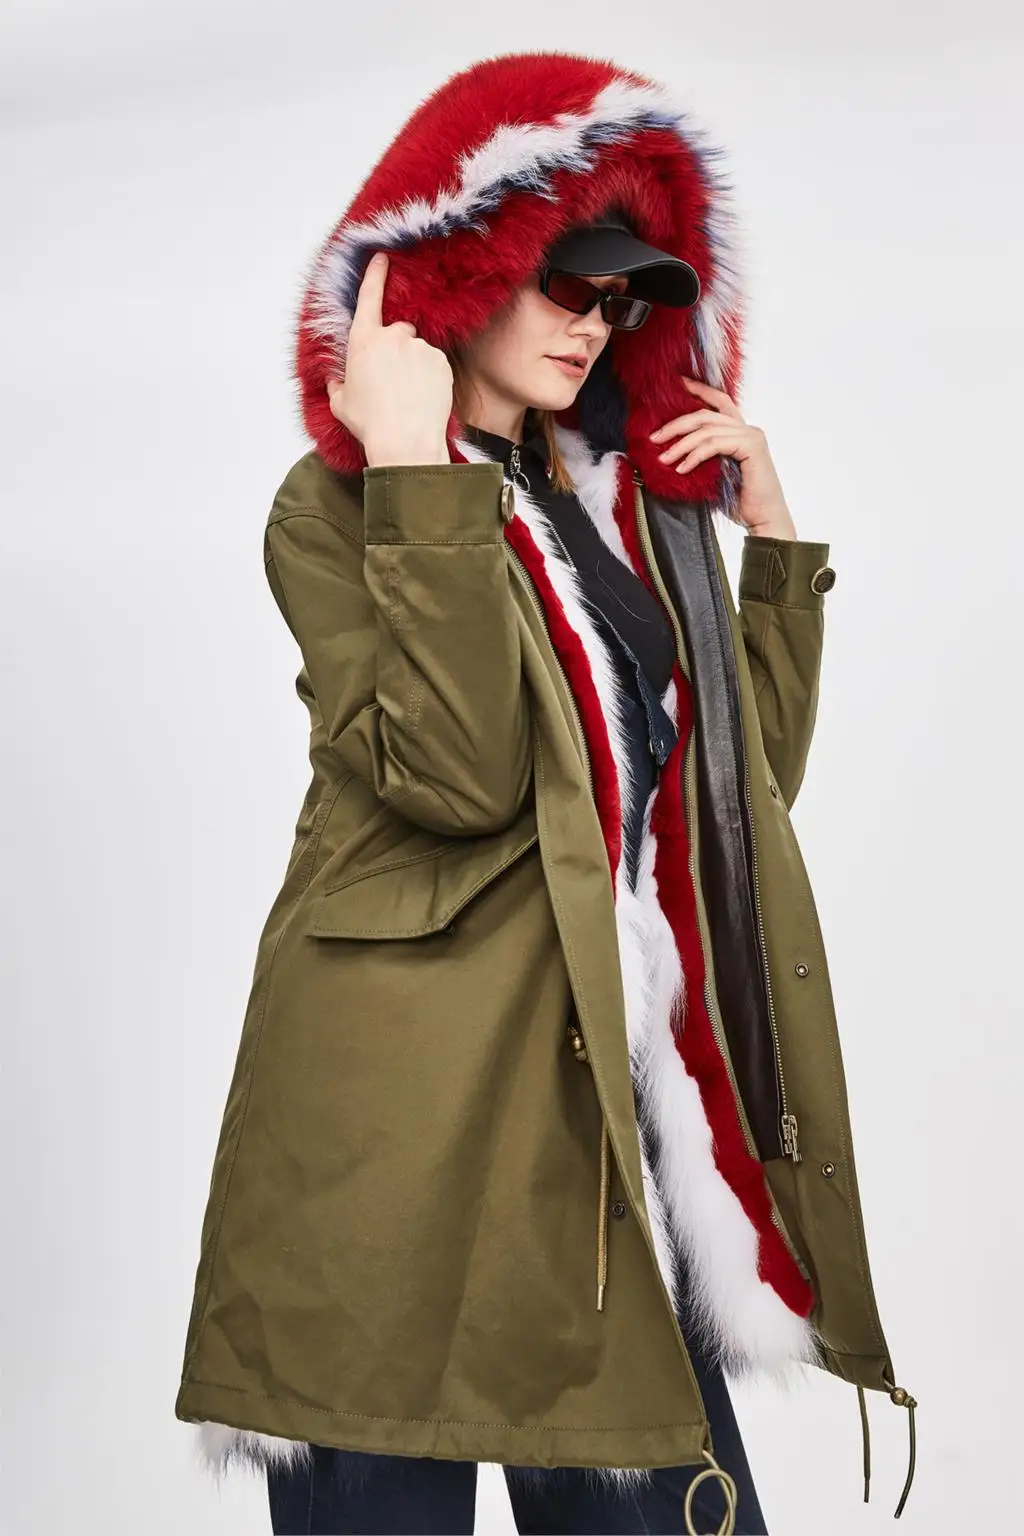 JAZZEVAR Новая куртка зима высокая мода для женщин роскошная большая лиса мех армейская парка длинная съемная подкладка с капюшоном водонепроницаемое пальто - Цвет: color 1